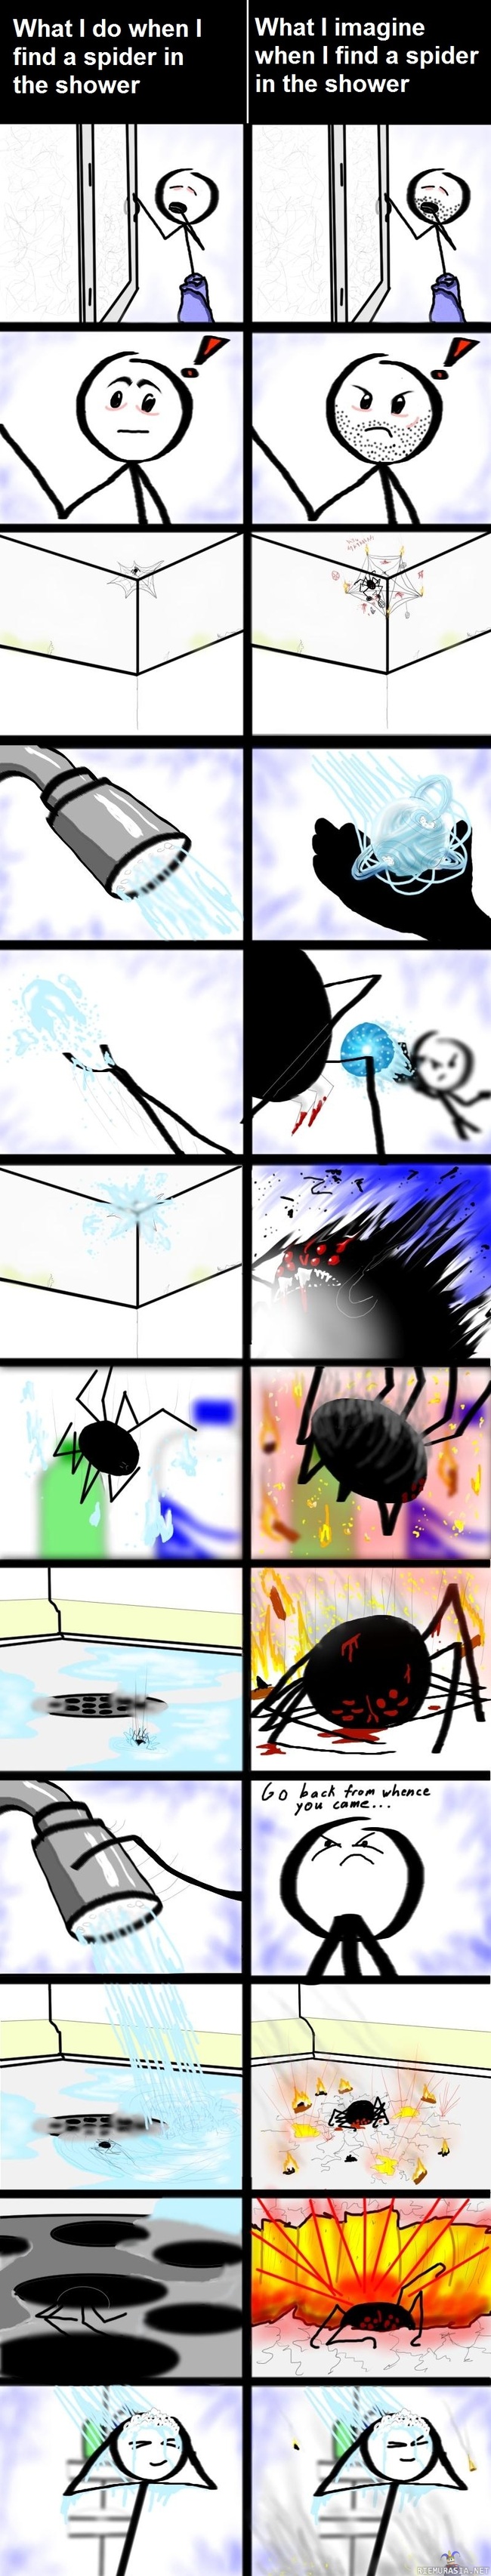 Hämähäkki suihkussa - Mitä tapahtuu / mitä kuvittelee tapahtuvan